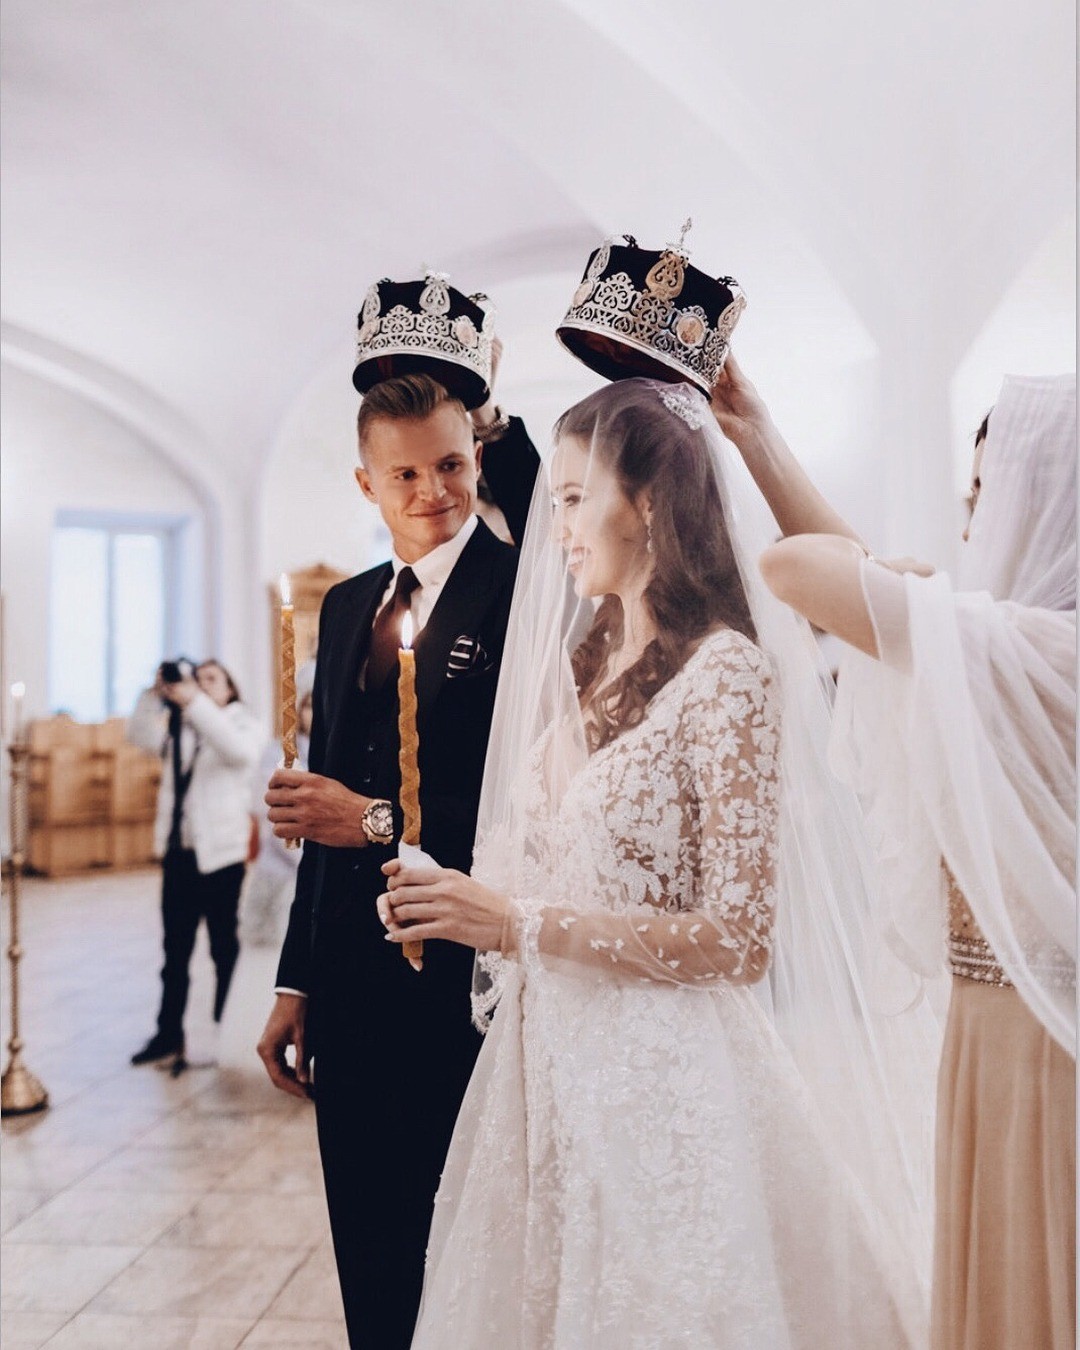 В своем Instagram-аккаунте Дмитрий Тарасов опубликовал фото, на котором они с супругой запечатлены во время венчания. Футболист написал трогательное послание супруге: в нем он поздравил А...